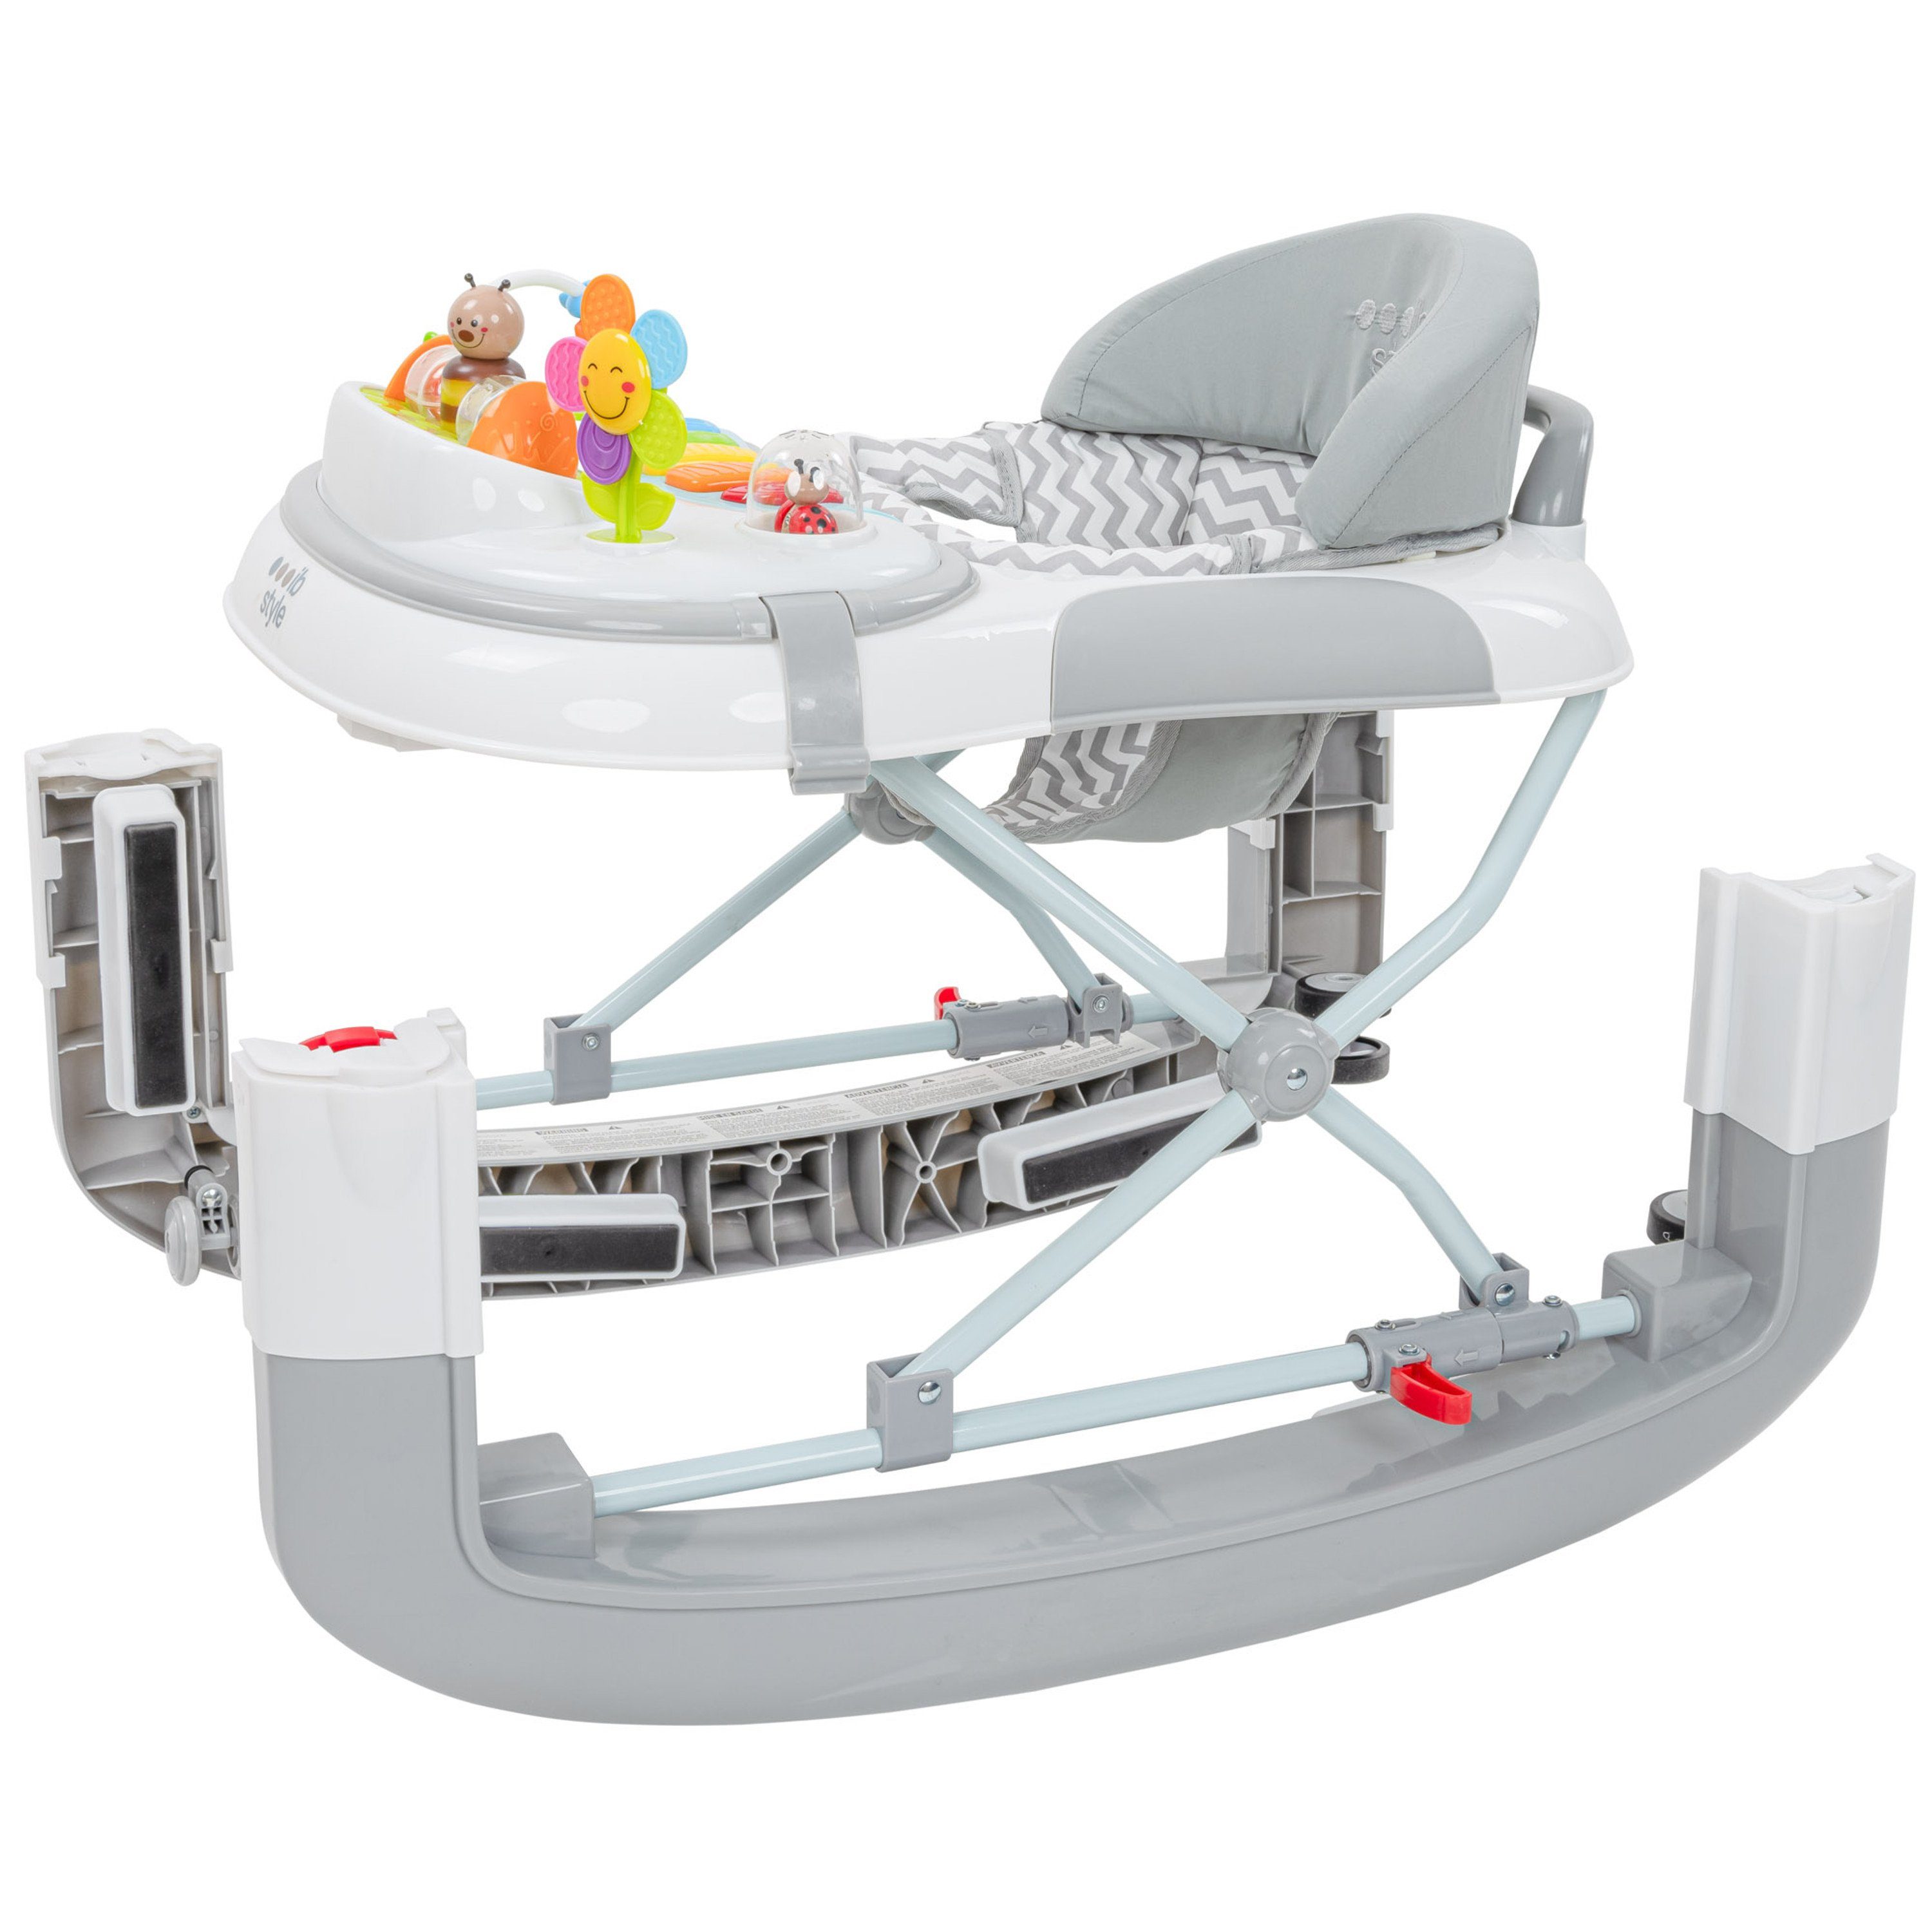 & Babywalker elektronischem Schaukelfunktion Spielelement Lauflernwagen style Wave ib Grau, Lauflernhilfe mit